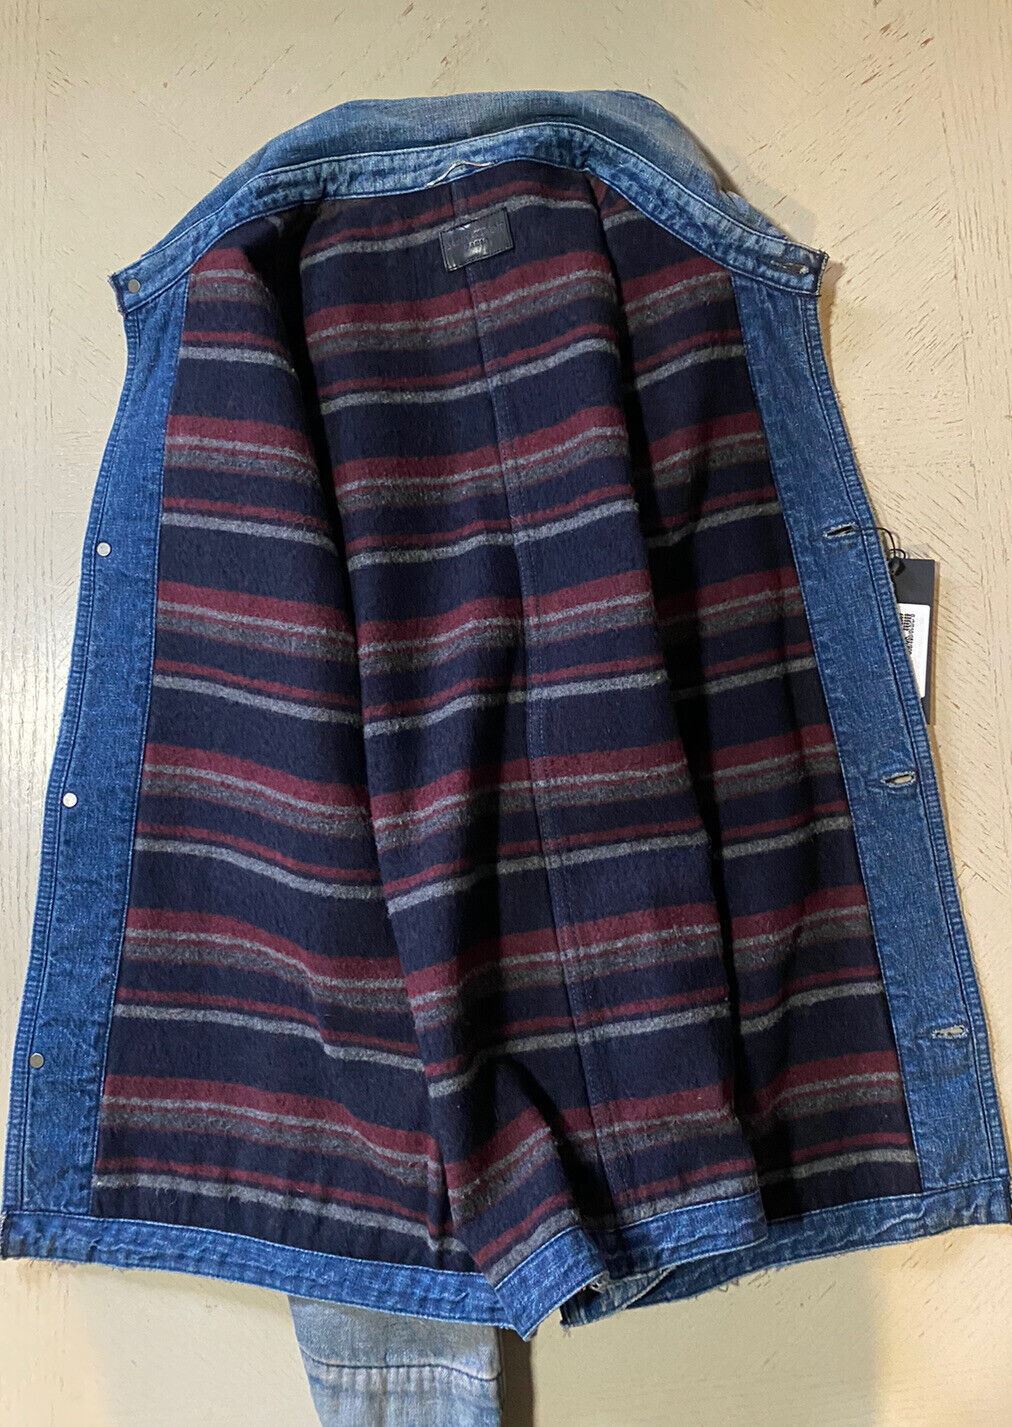 Новая мужская джинсовая куртка Saint Laurent Fifties Sun Dirty Blue XL стоимостью $1650